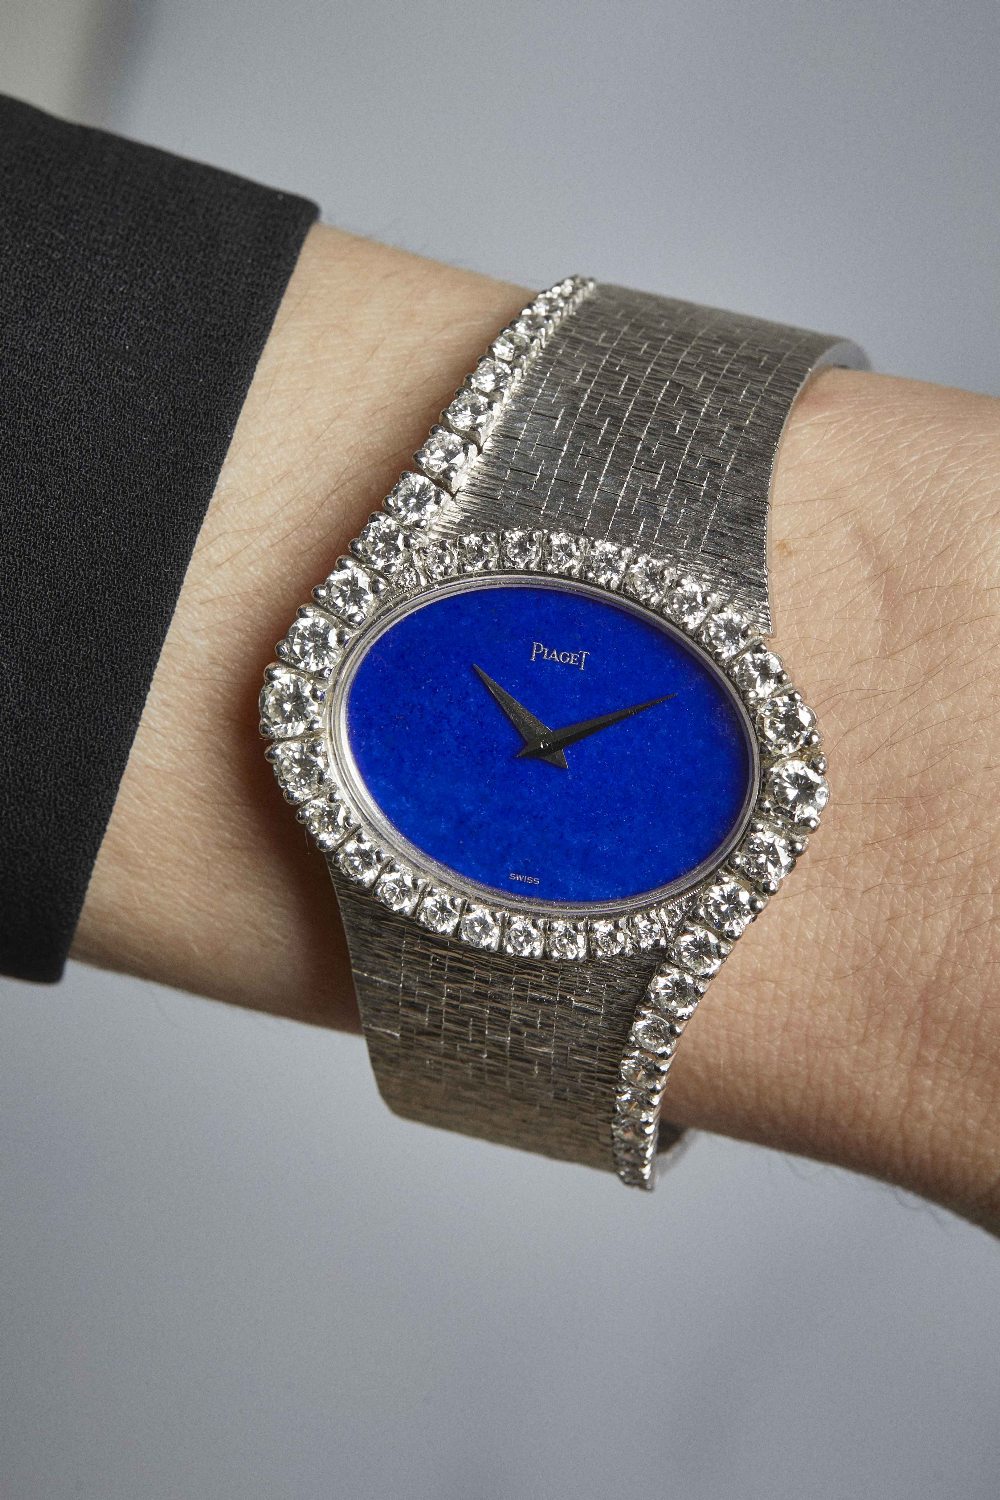 Piaget. Belle montre bracelet en or blanc 18K (750) sertie de diamants et cadran en lapis lazuli ... - Image 2 of 2